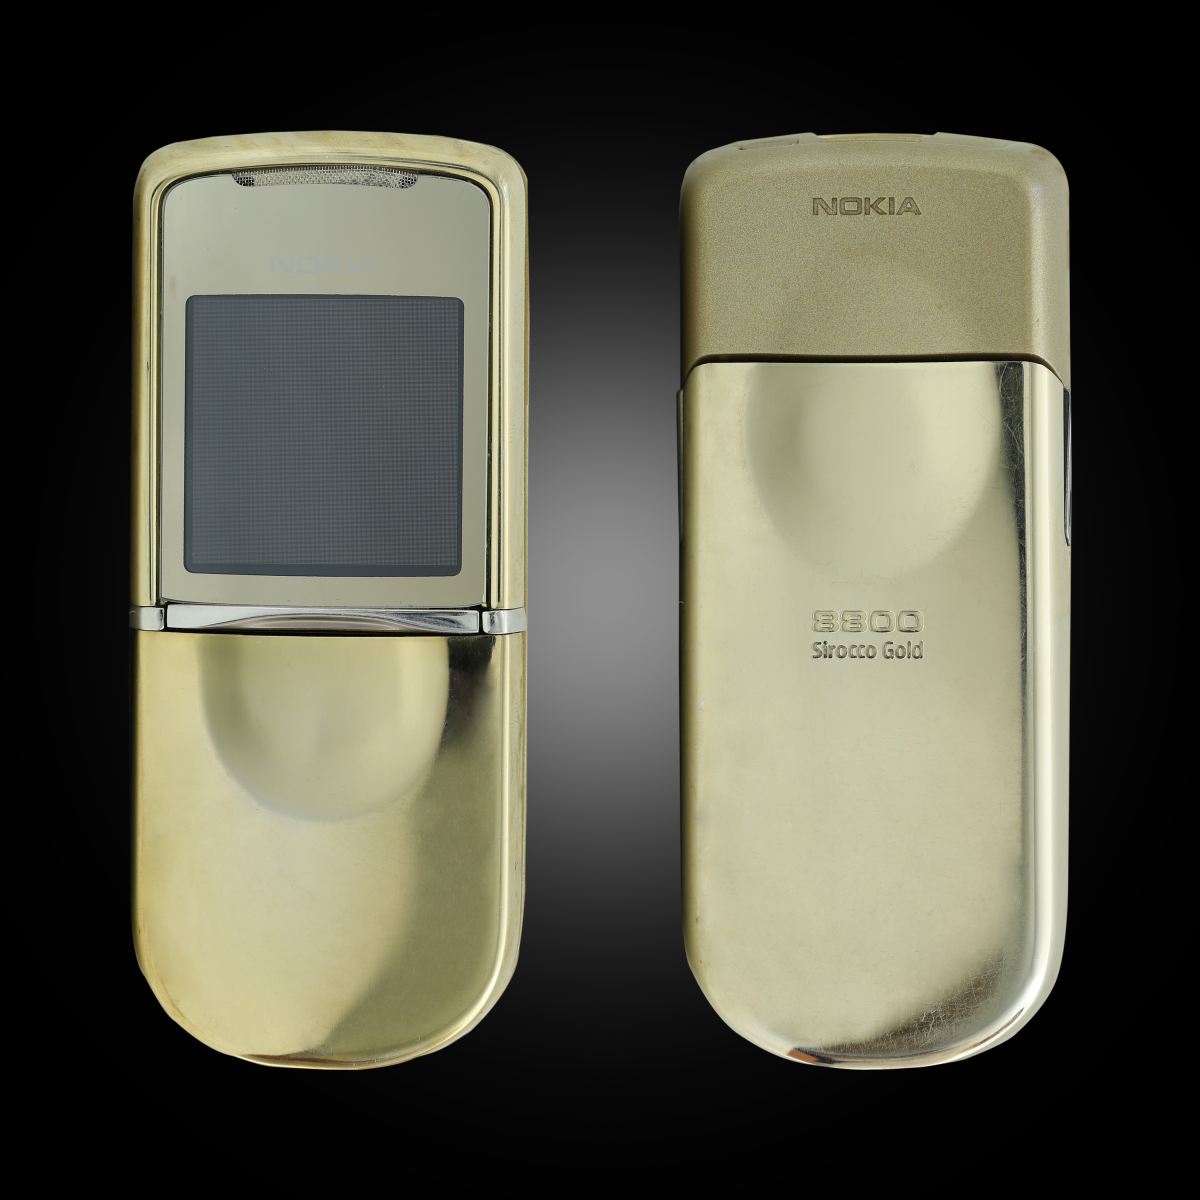 Điện thoại Nokia 8800 Siroco Gold cao cấp